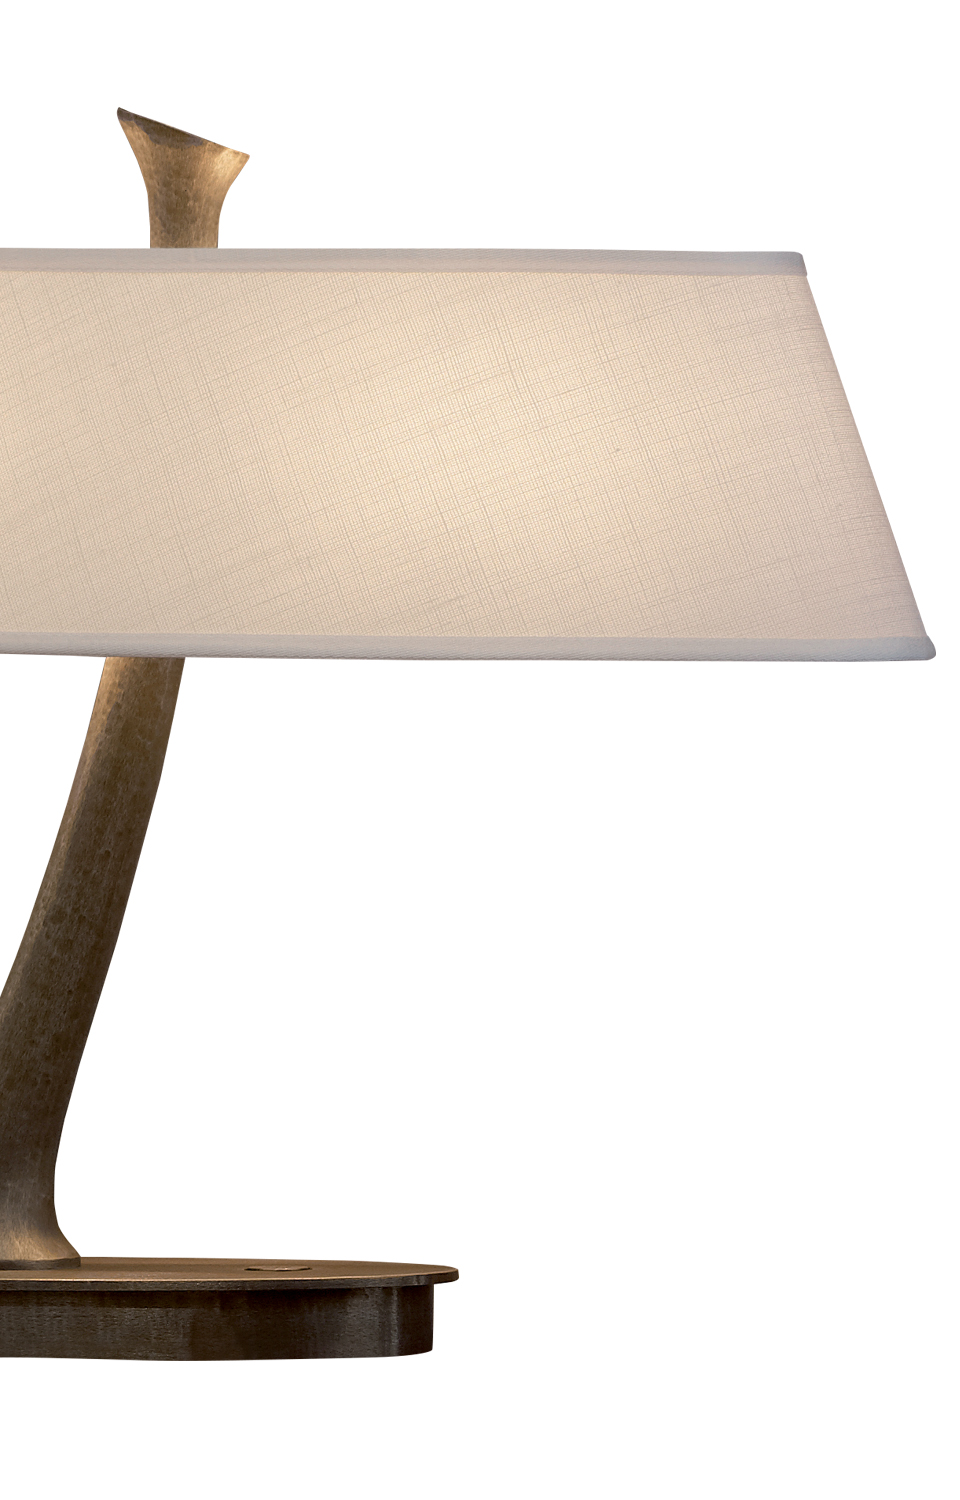 Lilì&nbsp;— настольная светодиодная лампа с бронзовым каркасом и льняным, хлопковым или сшитым вручную шелковым абажуром из каталога Promemoria | Promemoria